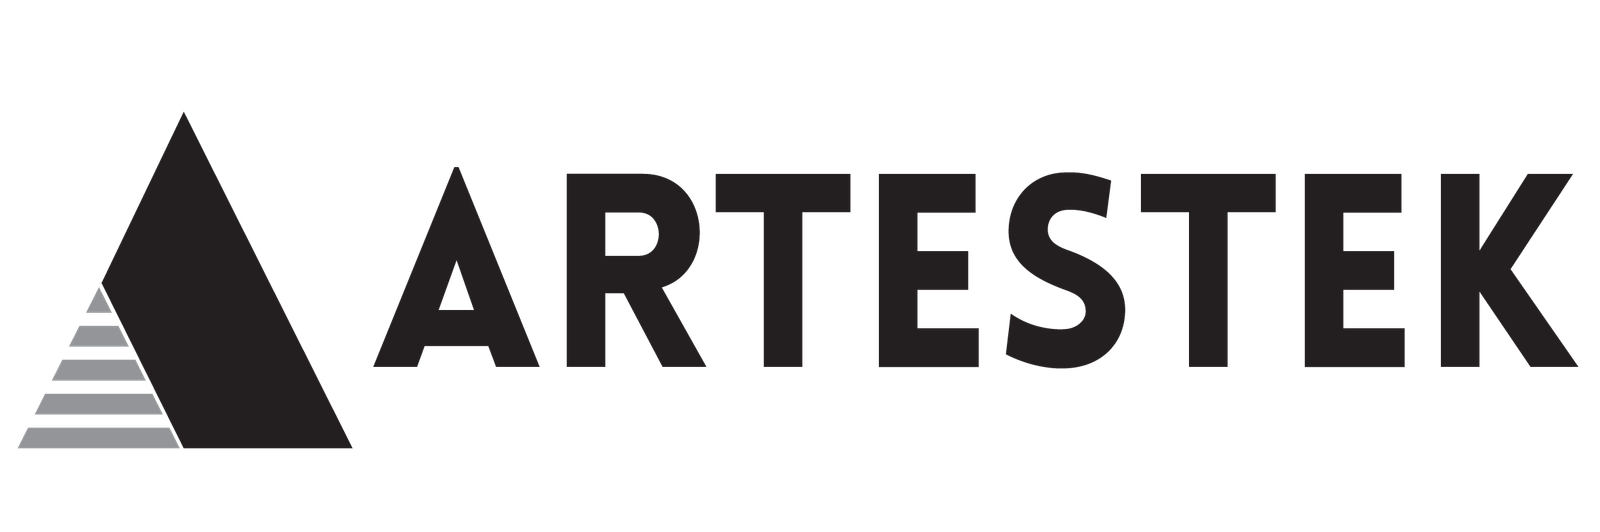 artestek.com